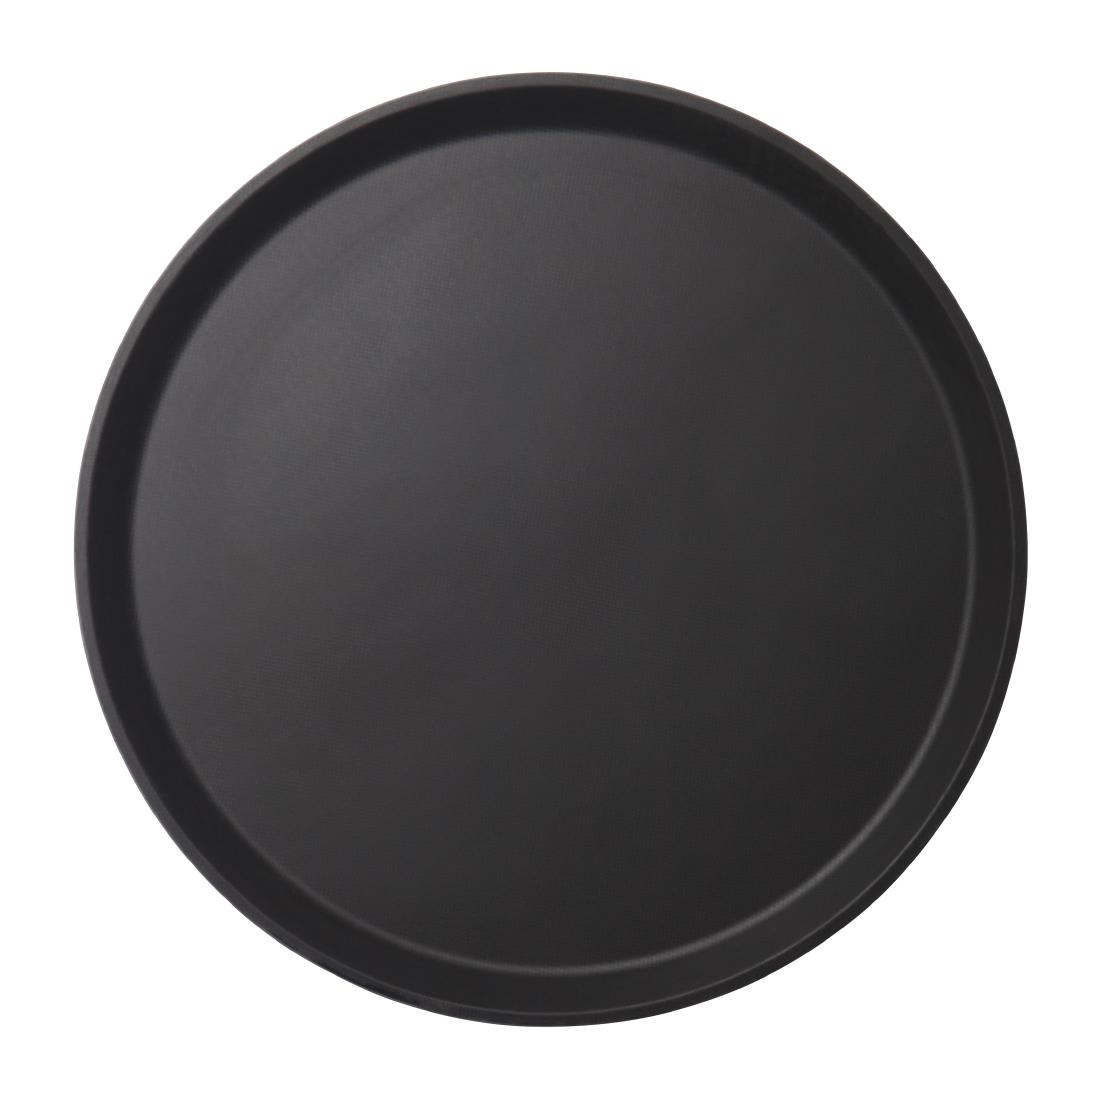 Cambro Camtread Fibreglass Round Non-Slip Tray Black 355mm